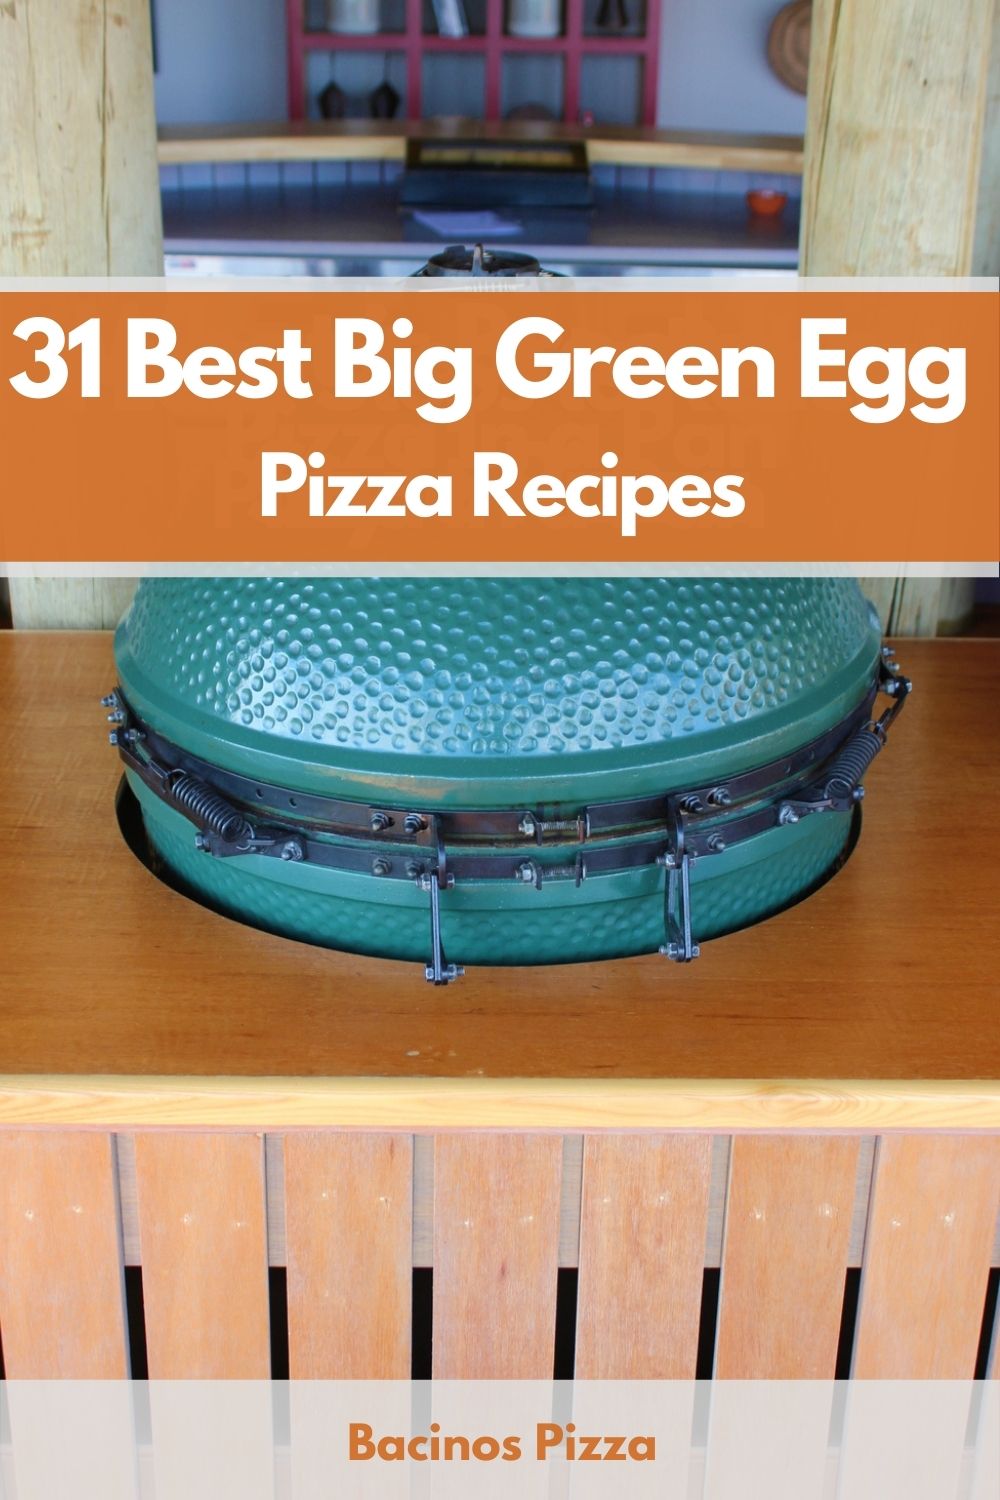 31 Best Big Green Egg Pizza Recipes pin 